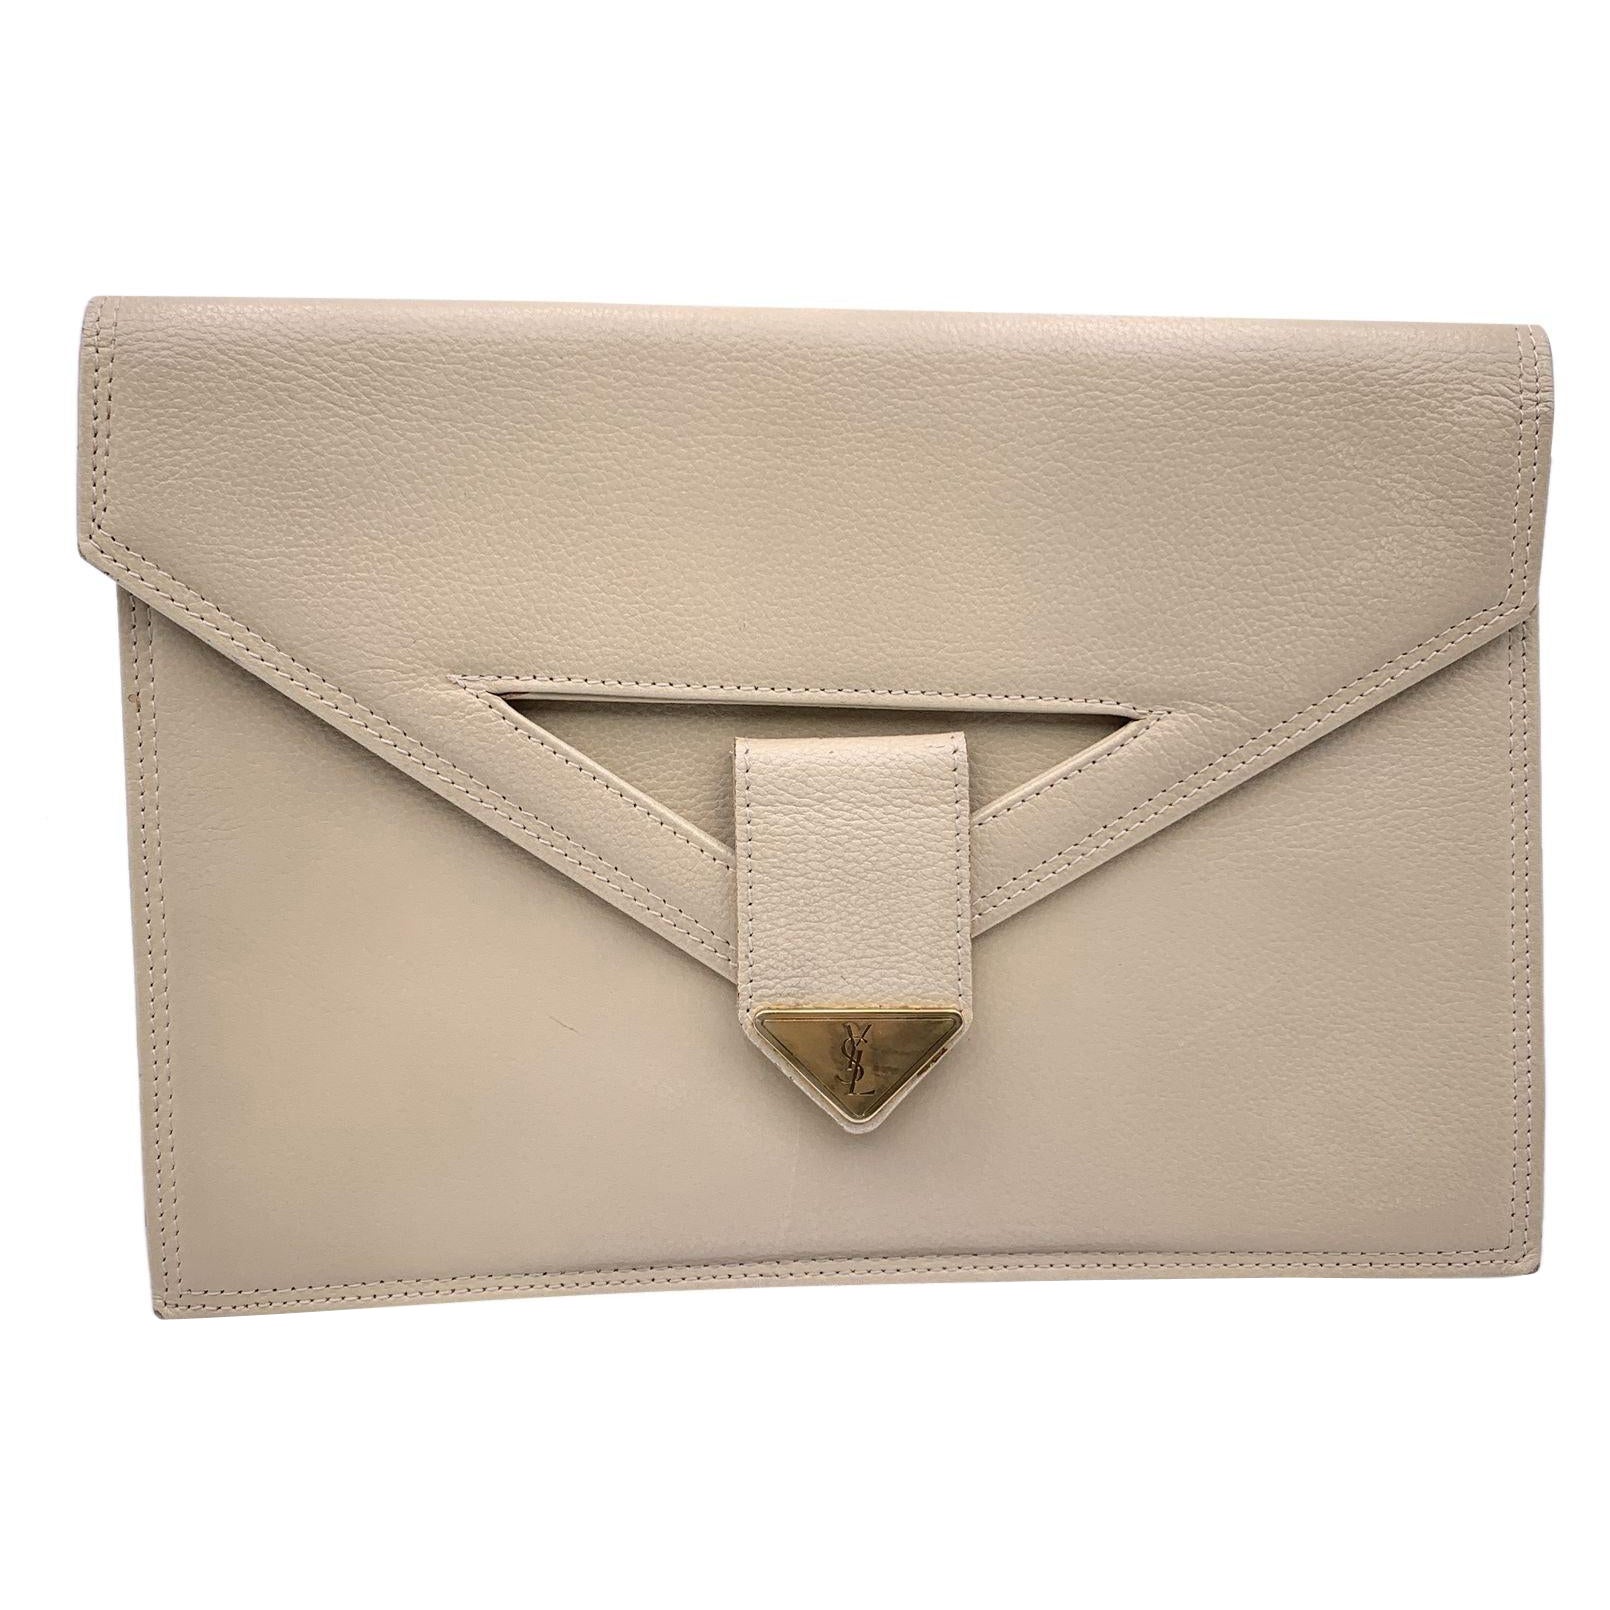 Yves Saint Laurent Vintage Beige Leather Clutch Bag Handbag For Sale